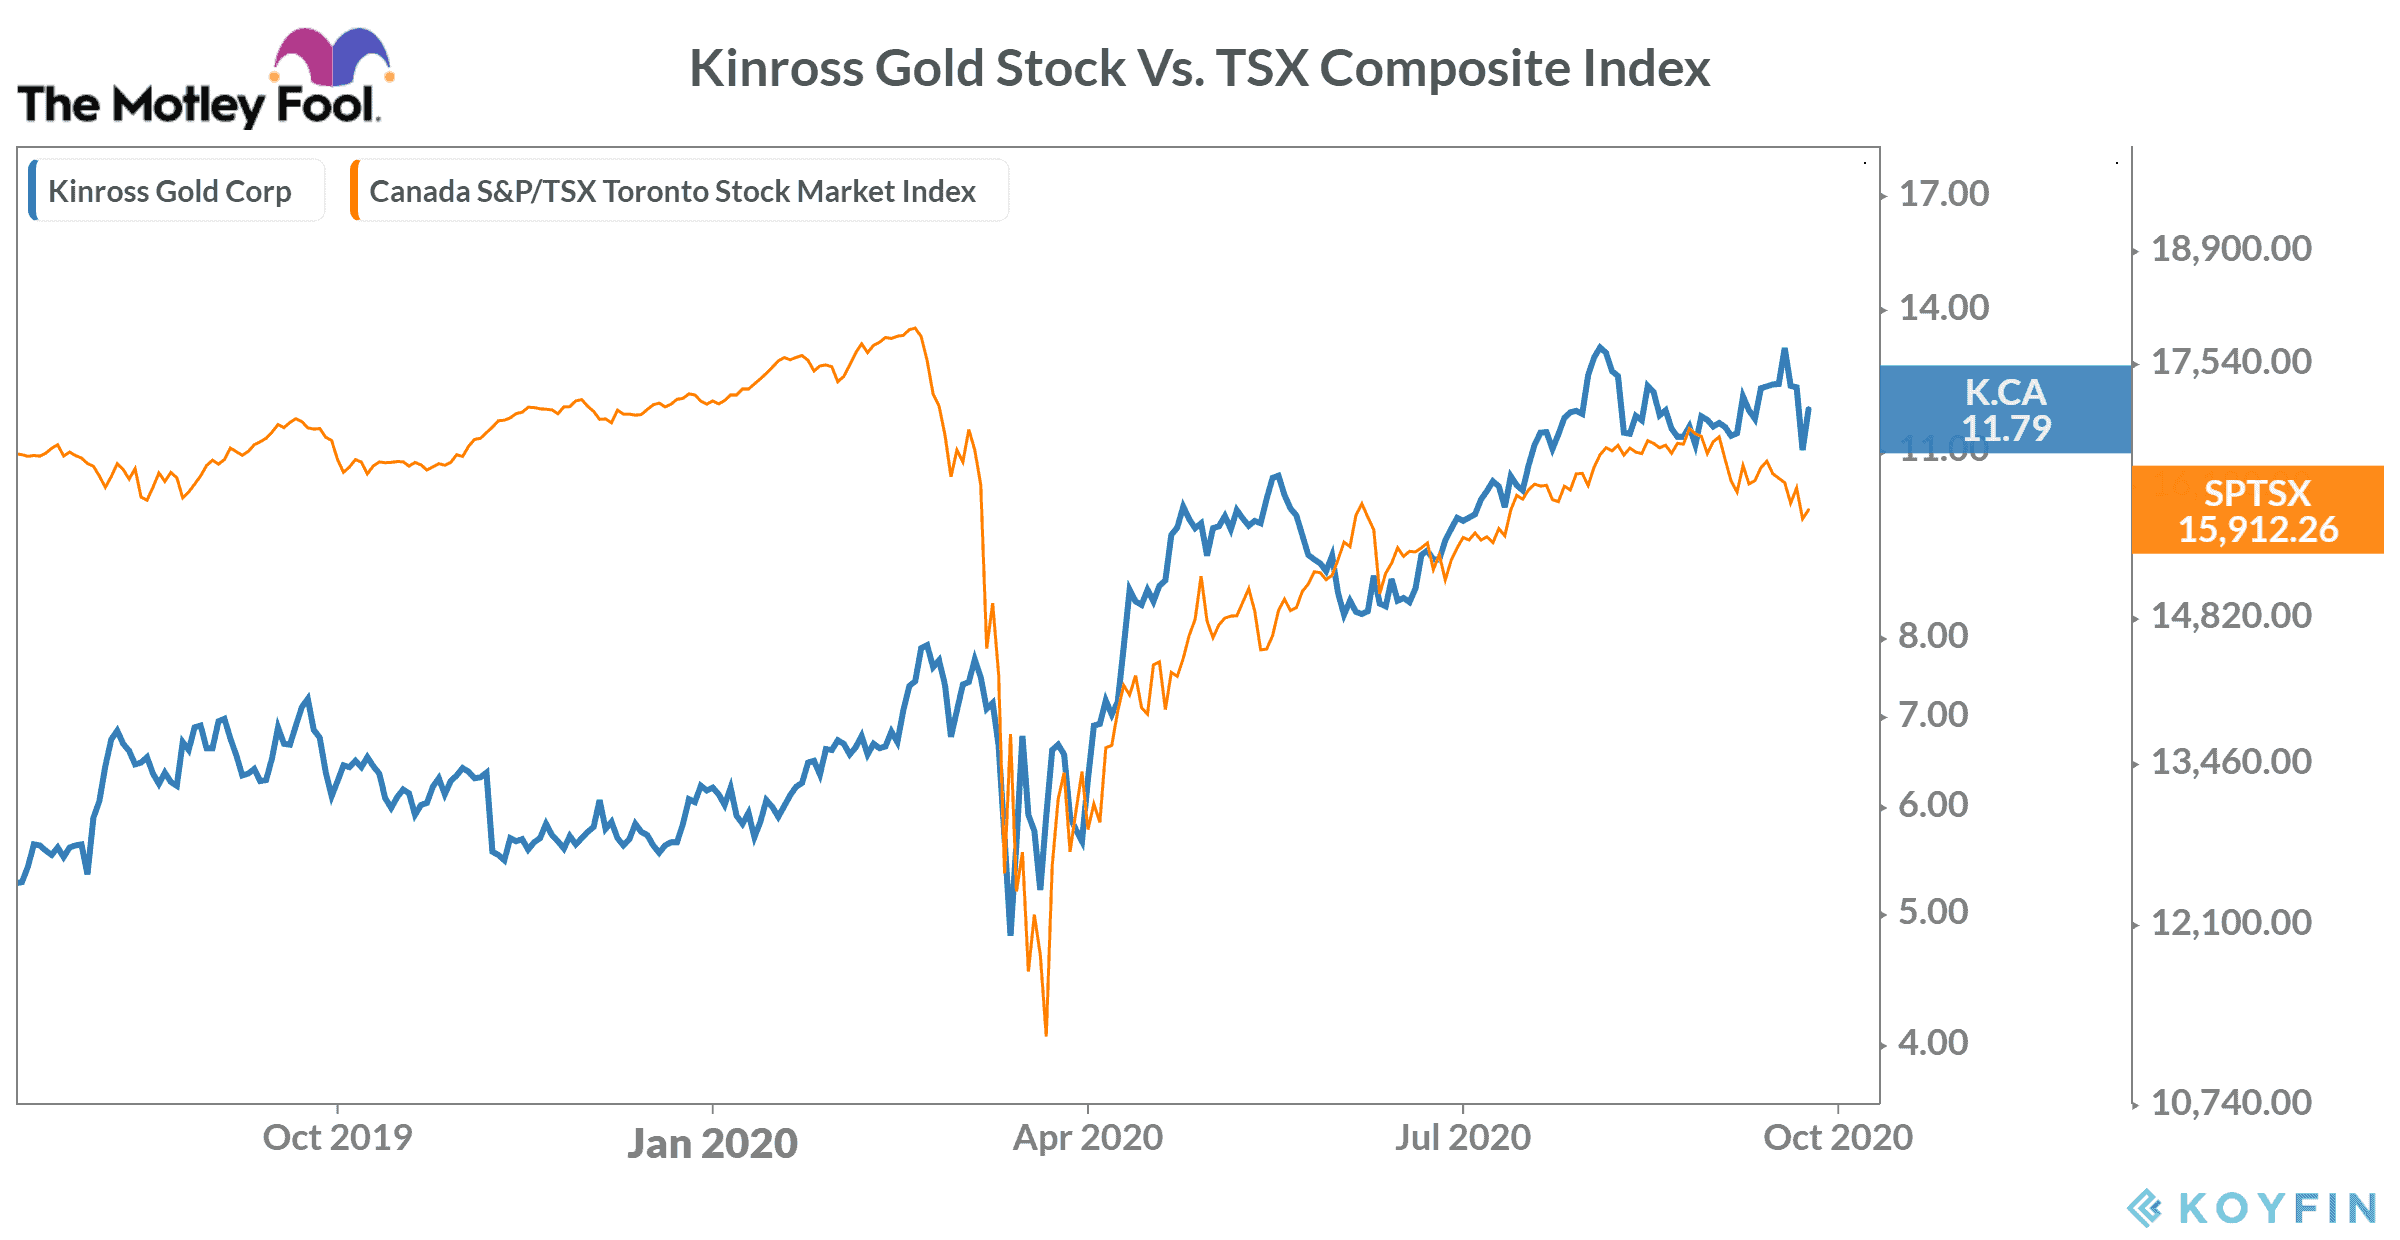 Kinross Gold stock